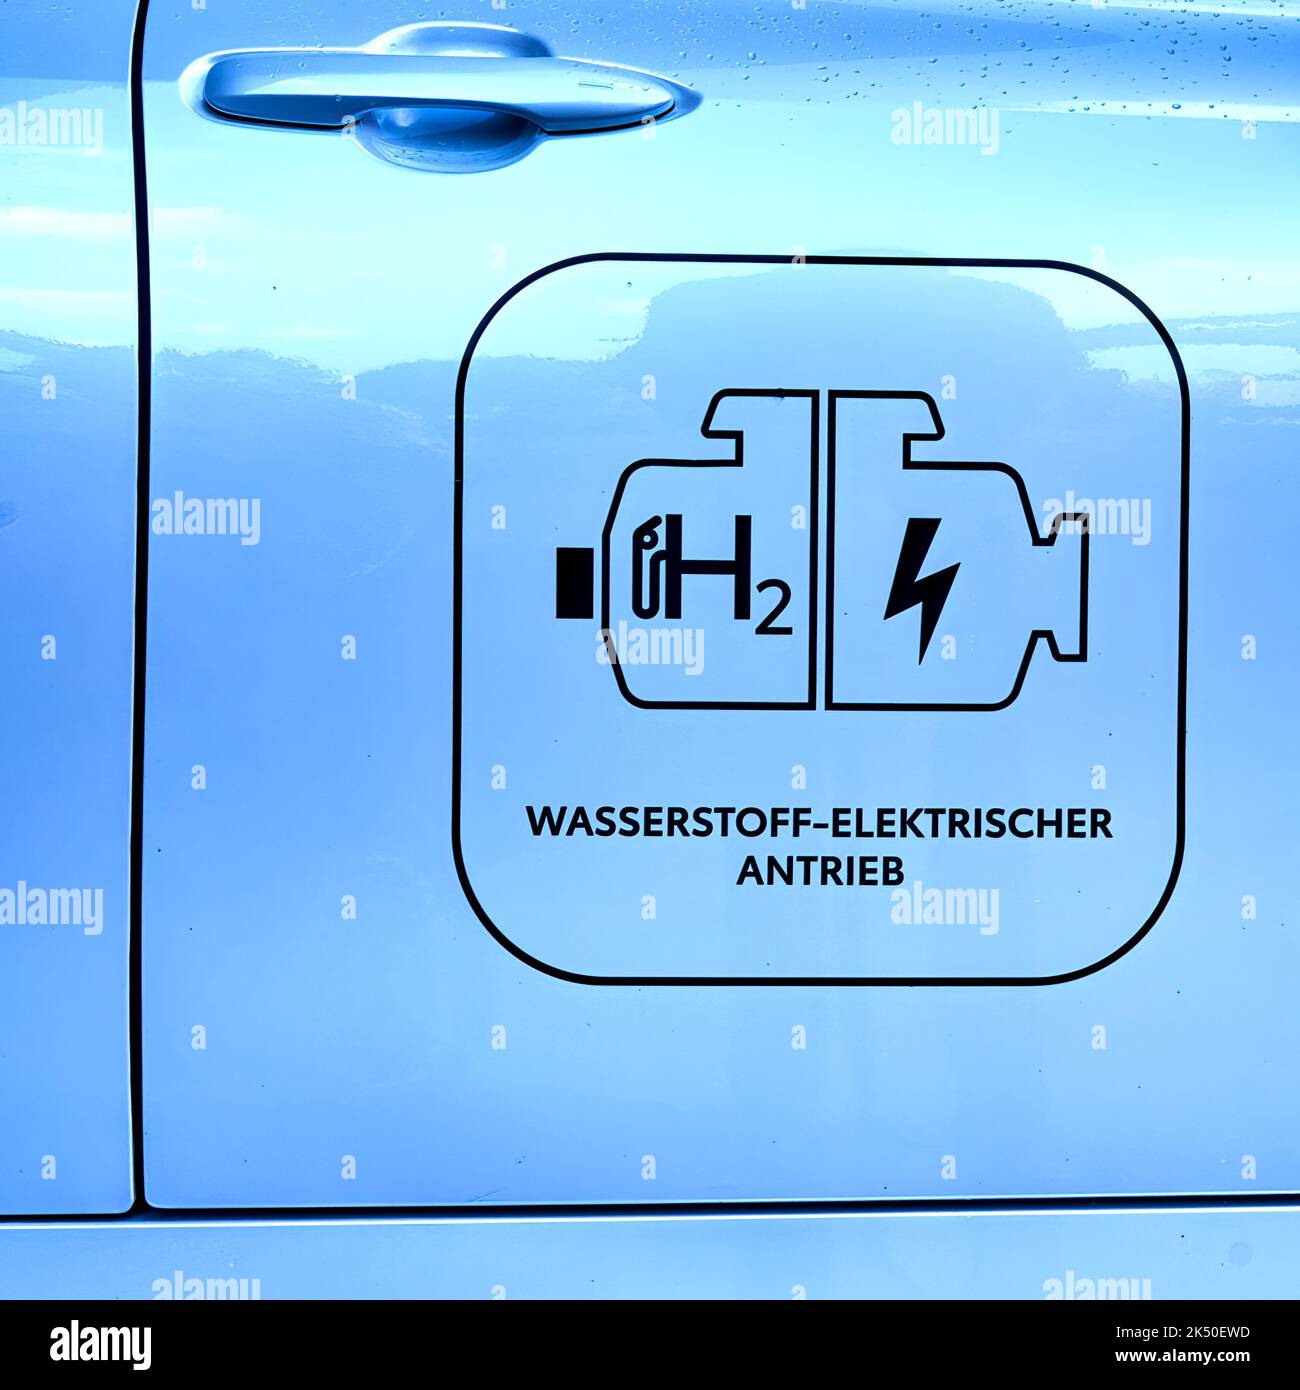 Logo e scritte per identificare un veicolo alimentato da corrente elettrica generata da idrogeno, Hannover, Germania, 24 settembre 2022 Foto Stock